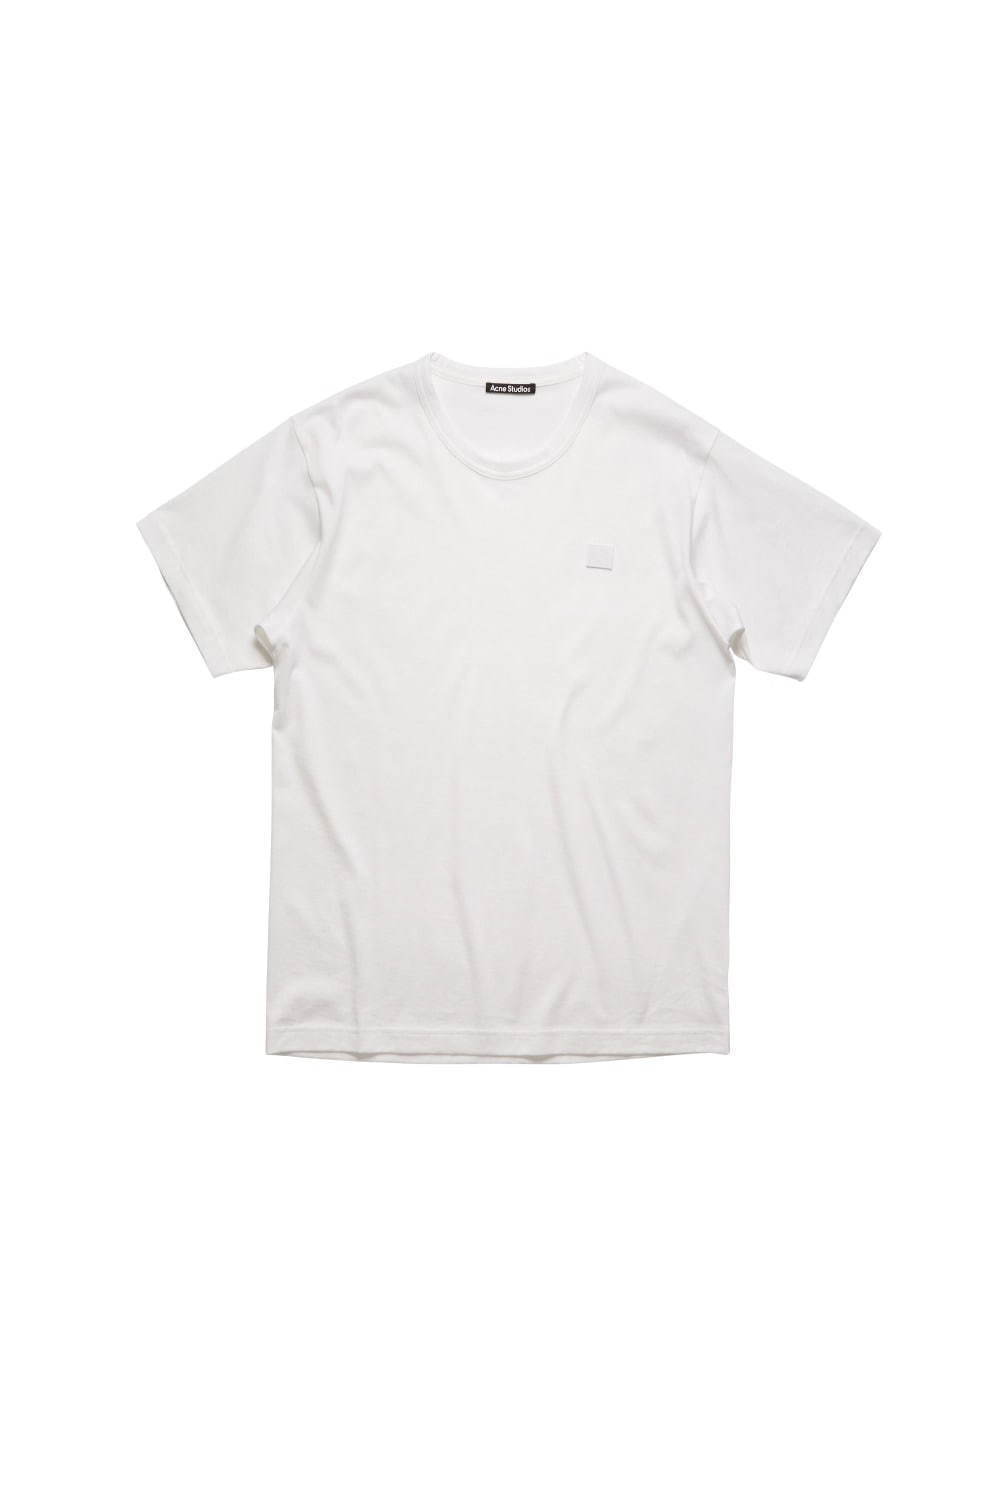 〈メンズ白Tシャツ特集〉人気ブランドのおすすめ無地TシャツやロゴT、おしゃれコーデの定番アイテム｜写真40